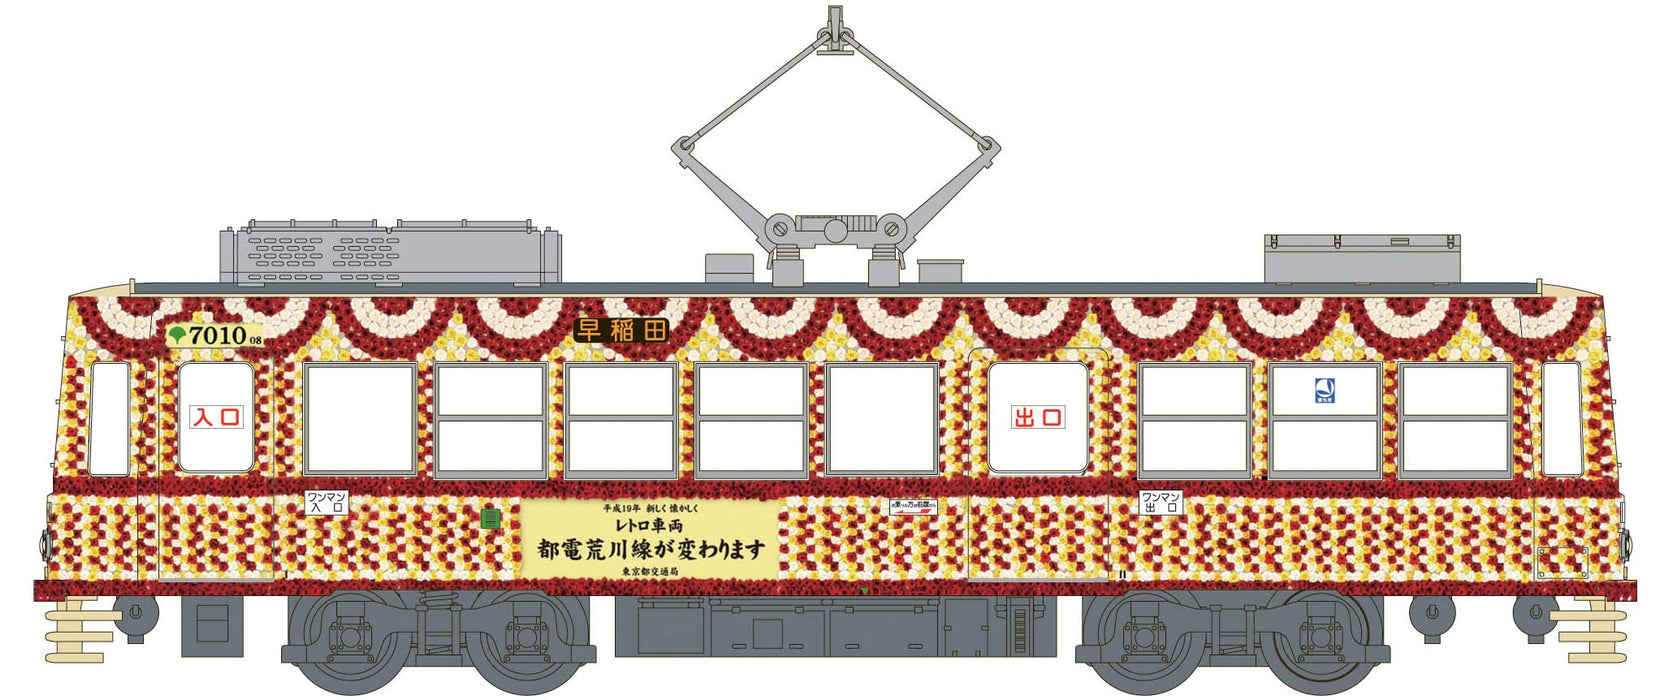 MODEMO Nt173 Tokyo Metropolitan Tram Type 7000 Updated '7010 Flower Train' N Scale